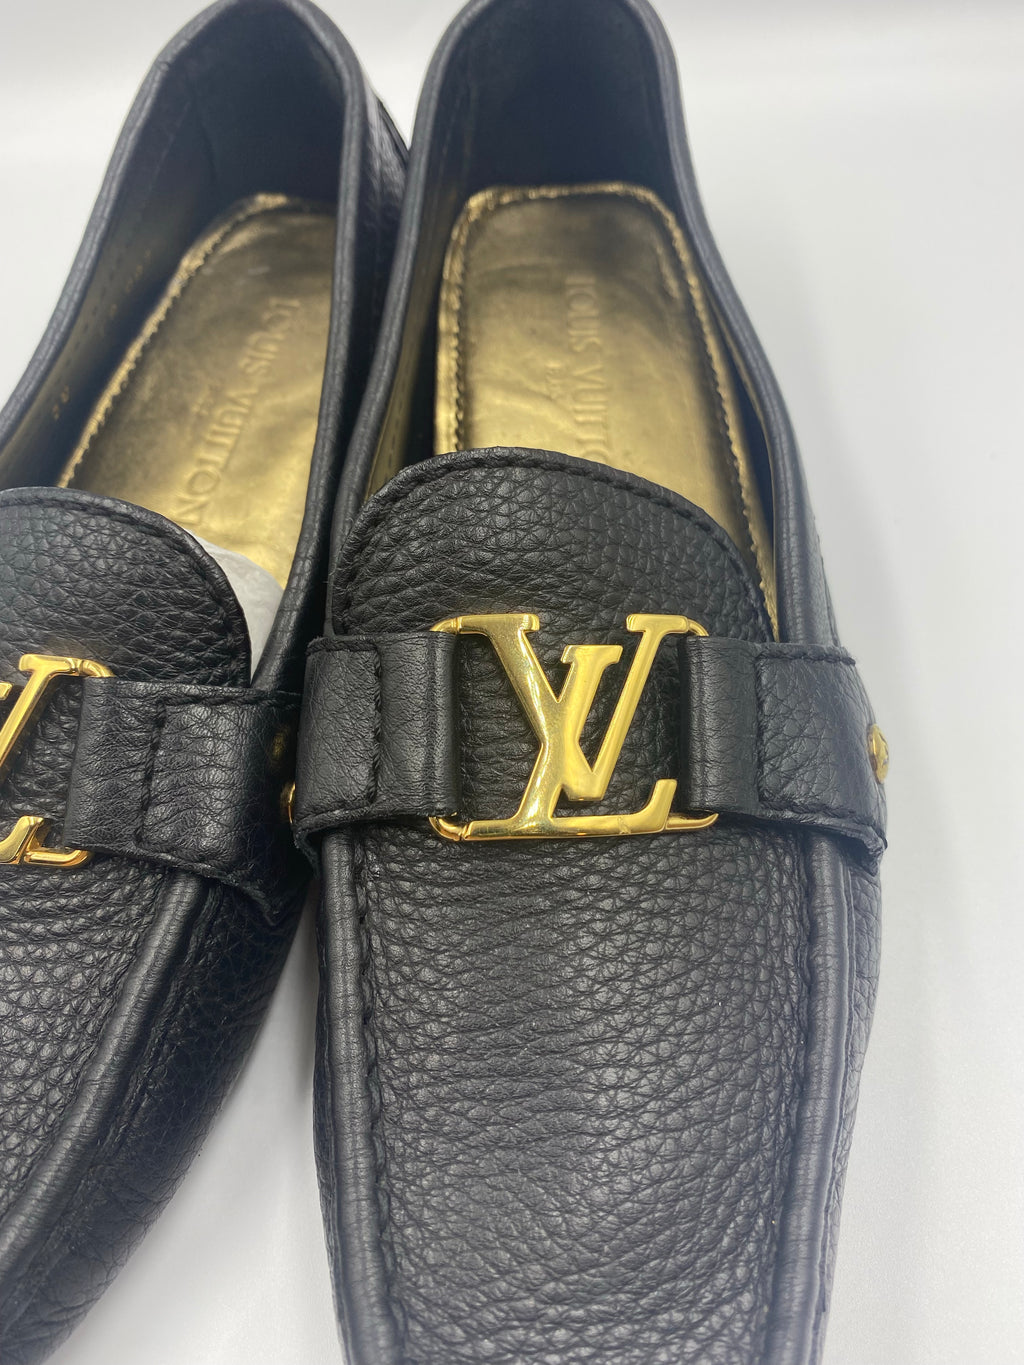 Louis Vuitton, Shoes, Black Louis Vuitton Loafers